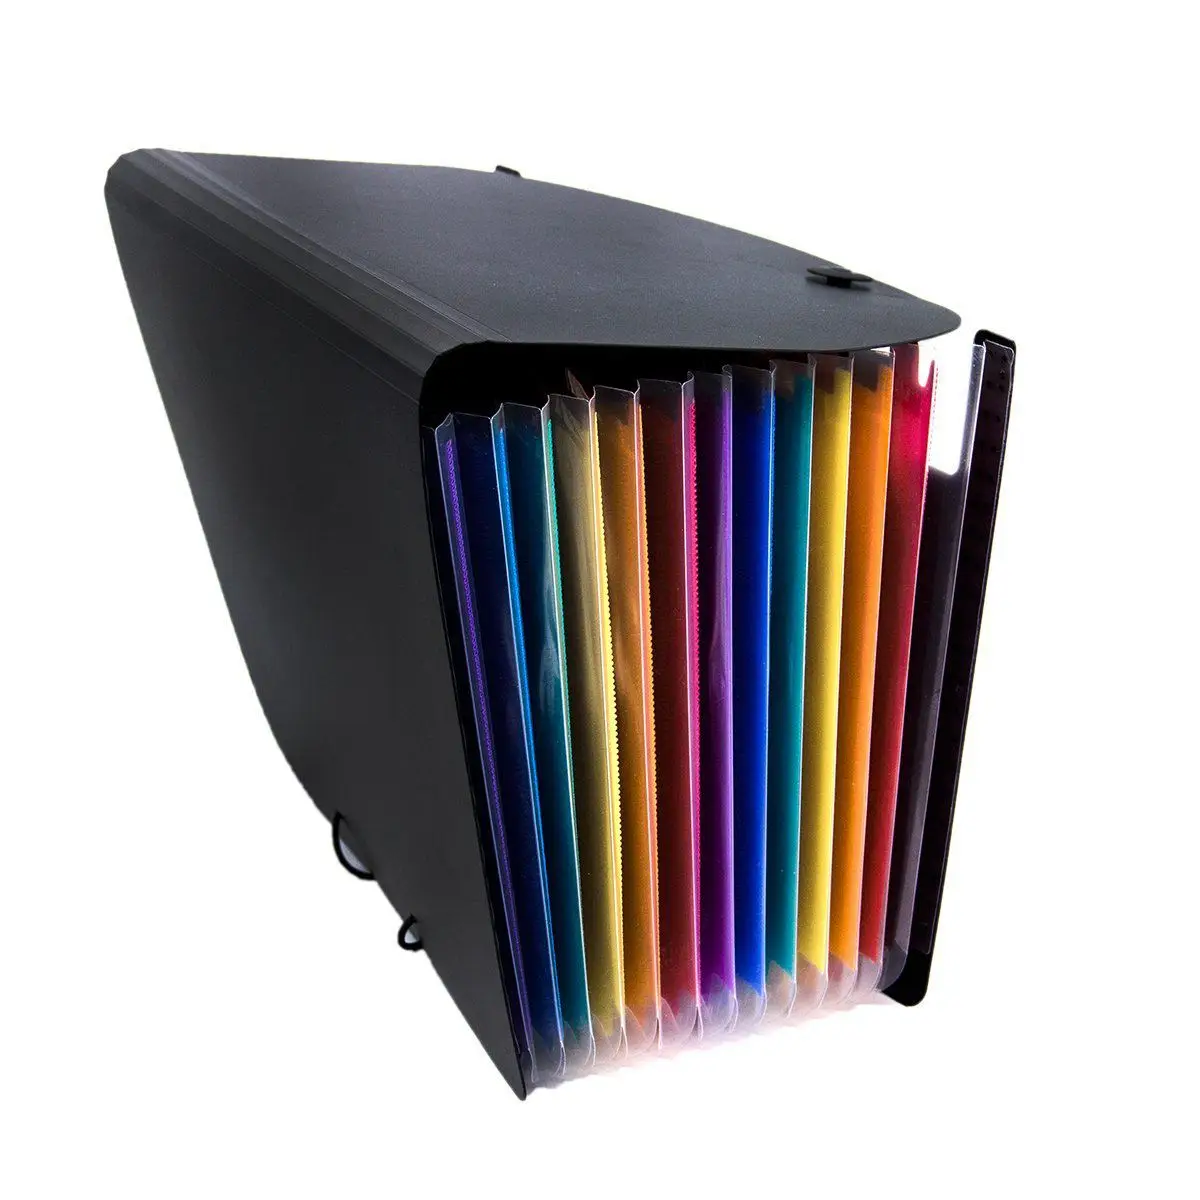 12 Карман Расширения напильники папка/A4 расширяемый Файл Организатор/портативный папка для бумаг на молнии/Высокая емкость разноцветный Stan